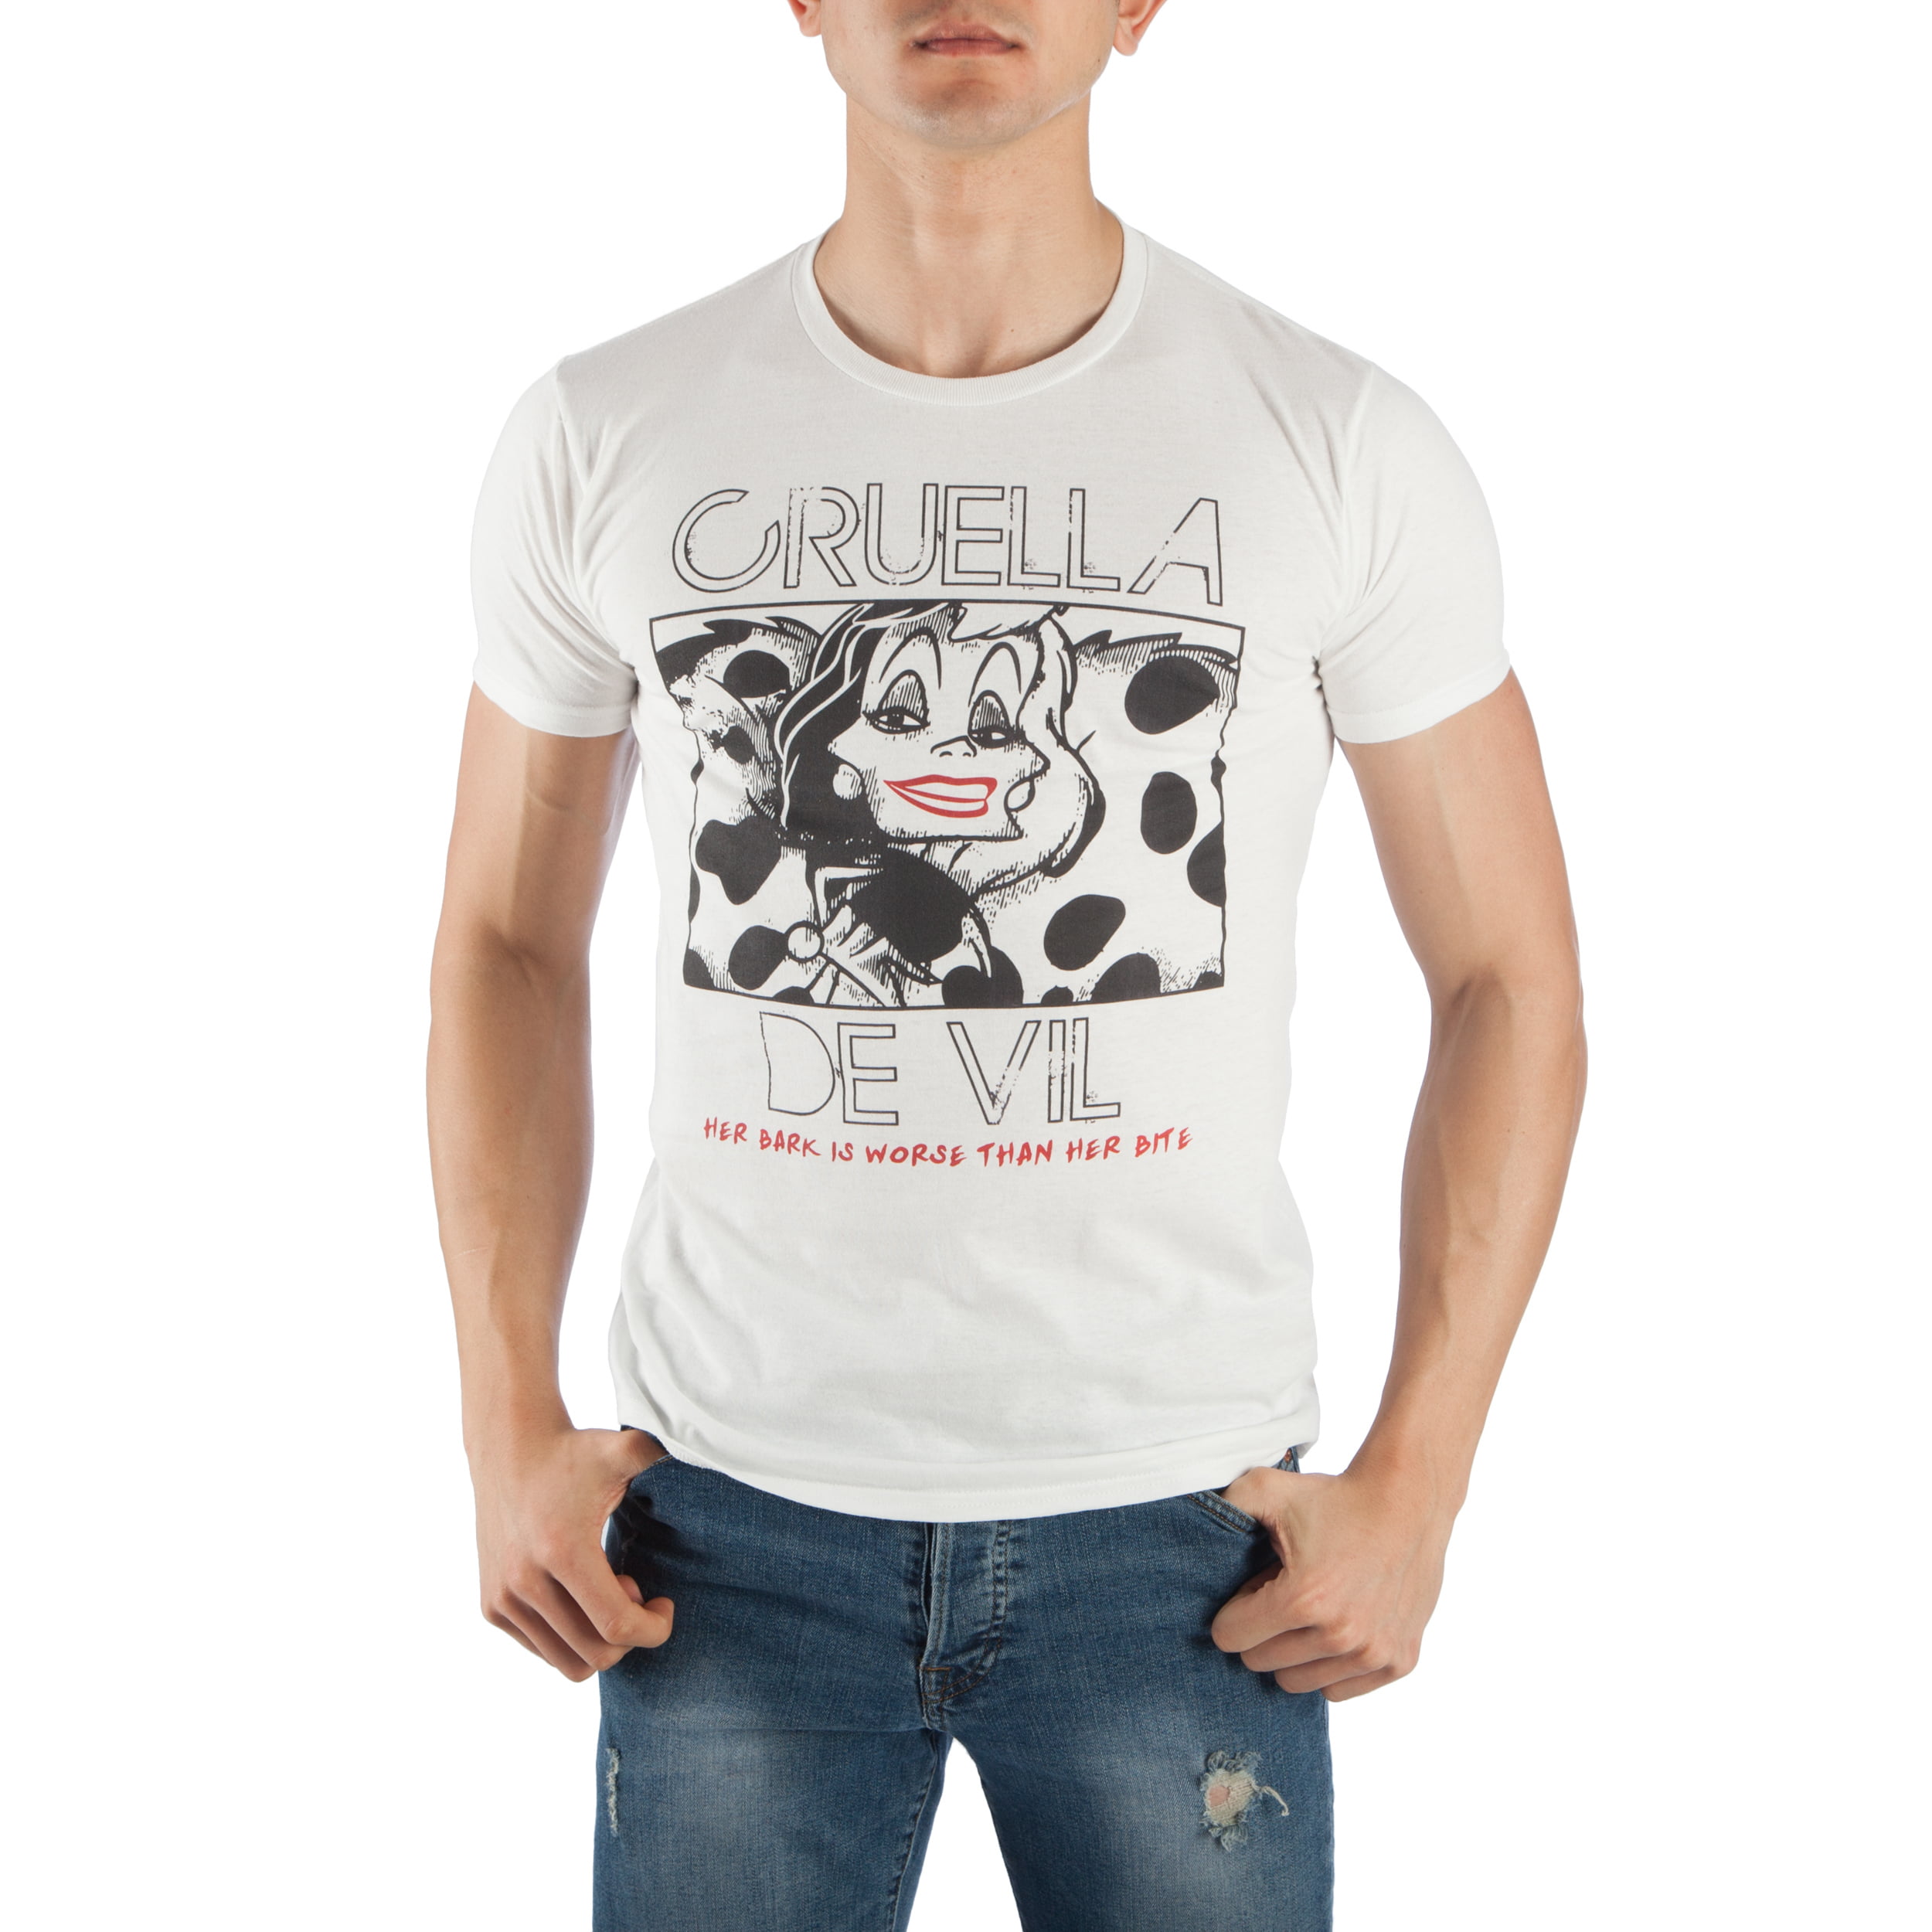 Cruella Movie 2021 T-shirt Cruella De Vil Disney Movie T-shirt Cruella De Vil Matching Shirt Cruella De Vil Shirt 2021